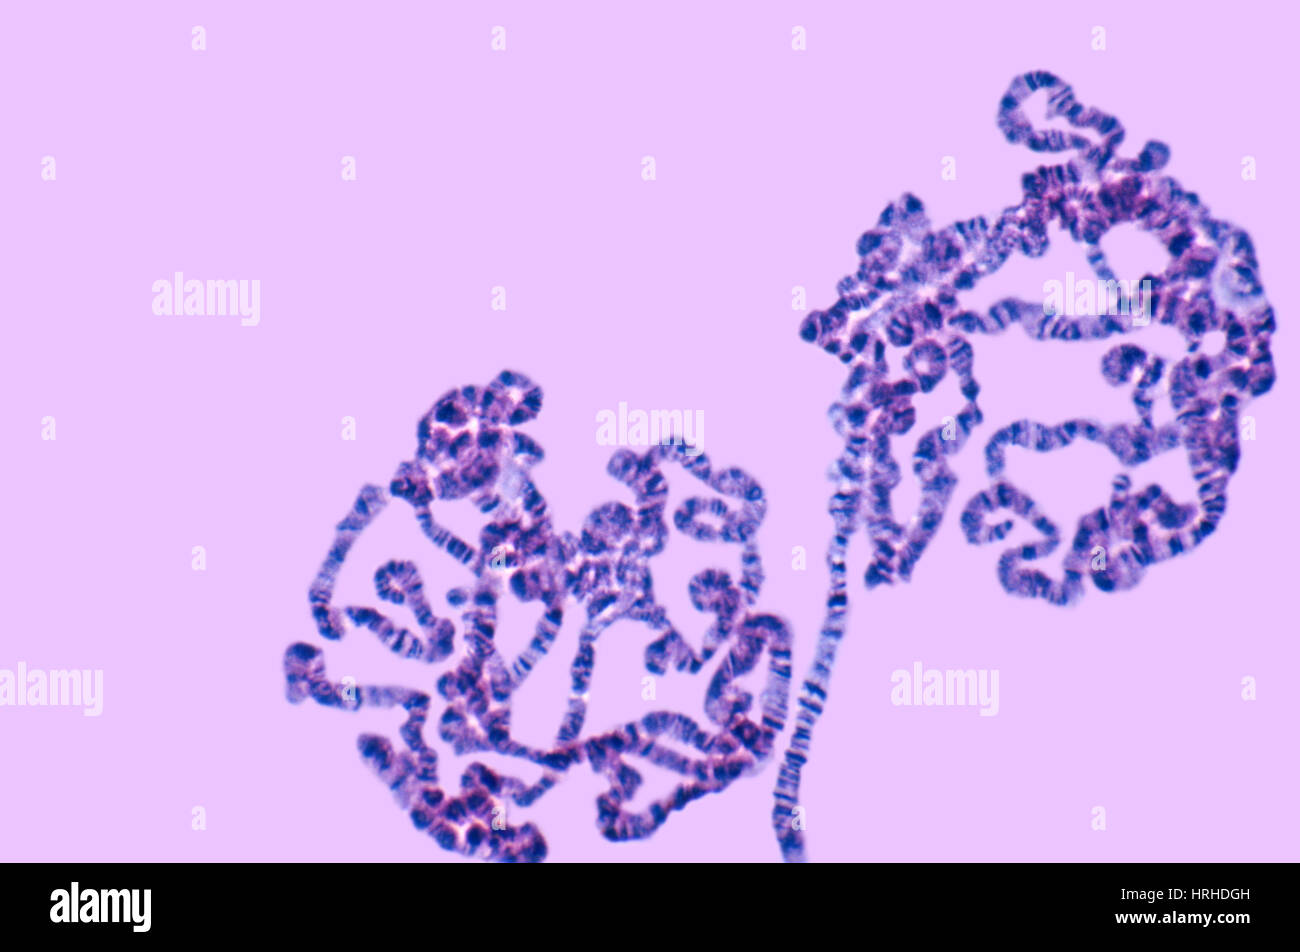 Fruchtfliege Speicheldrüse Chromosomen Stockfoto